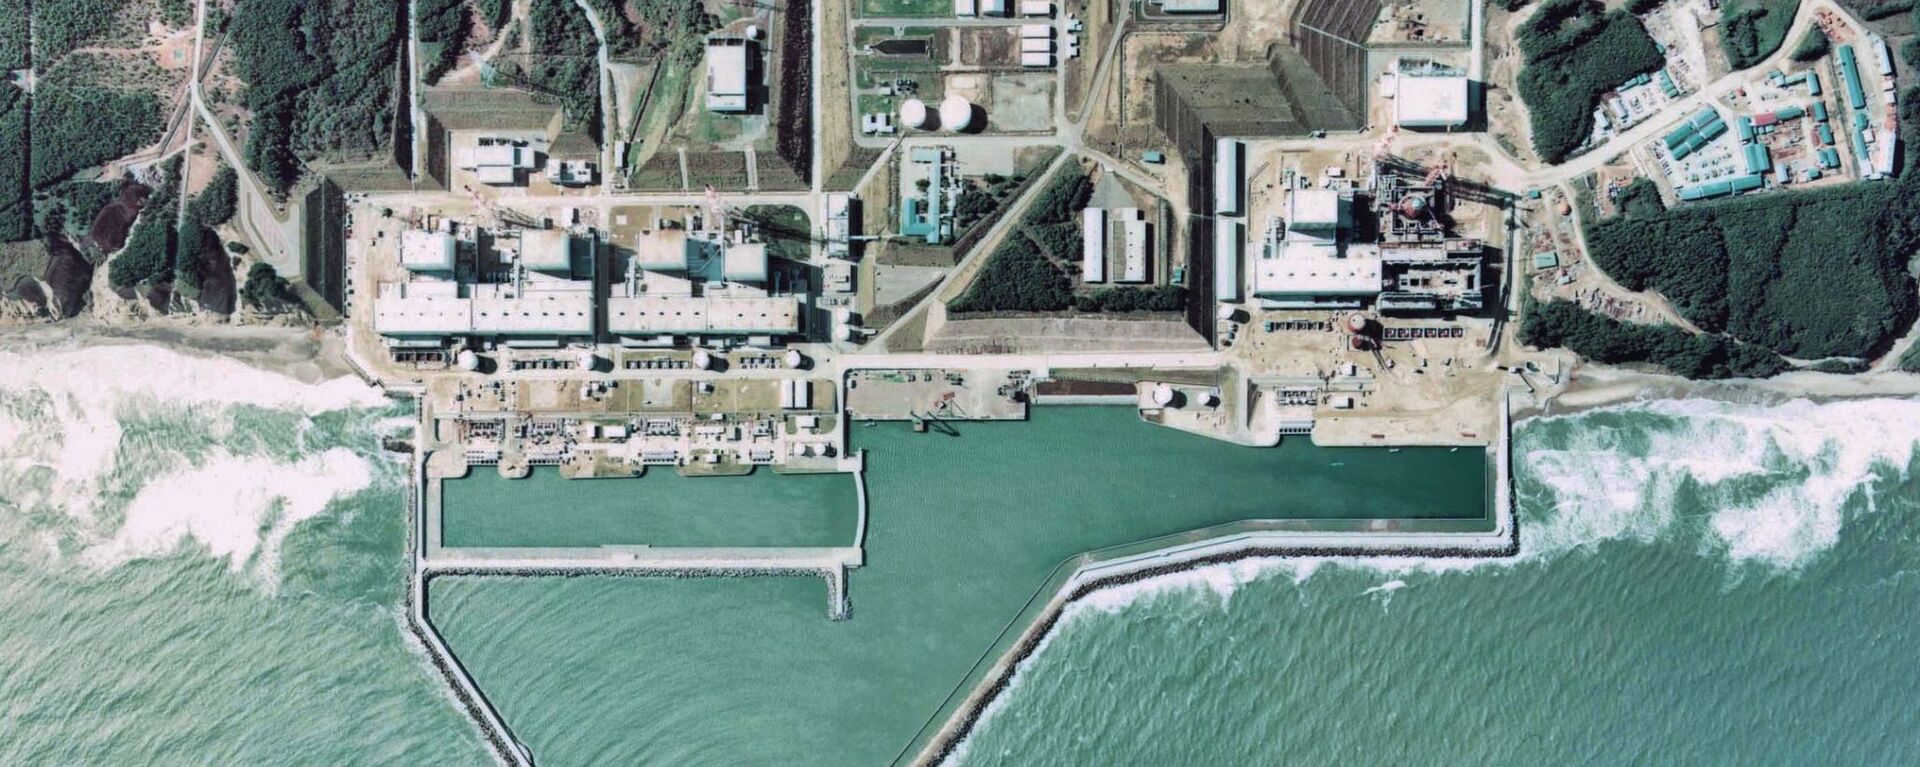 福島第一原子力発電所。左から4号機、3号機、2号機、1号機。右に5号機と6号機の建設現場が見える（1975年撮影） - Sputnik 日本, 1920, 04.03.2021